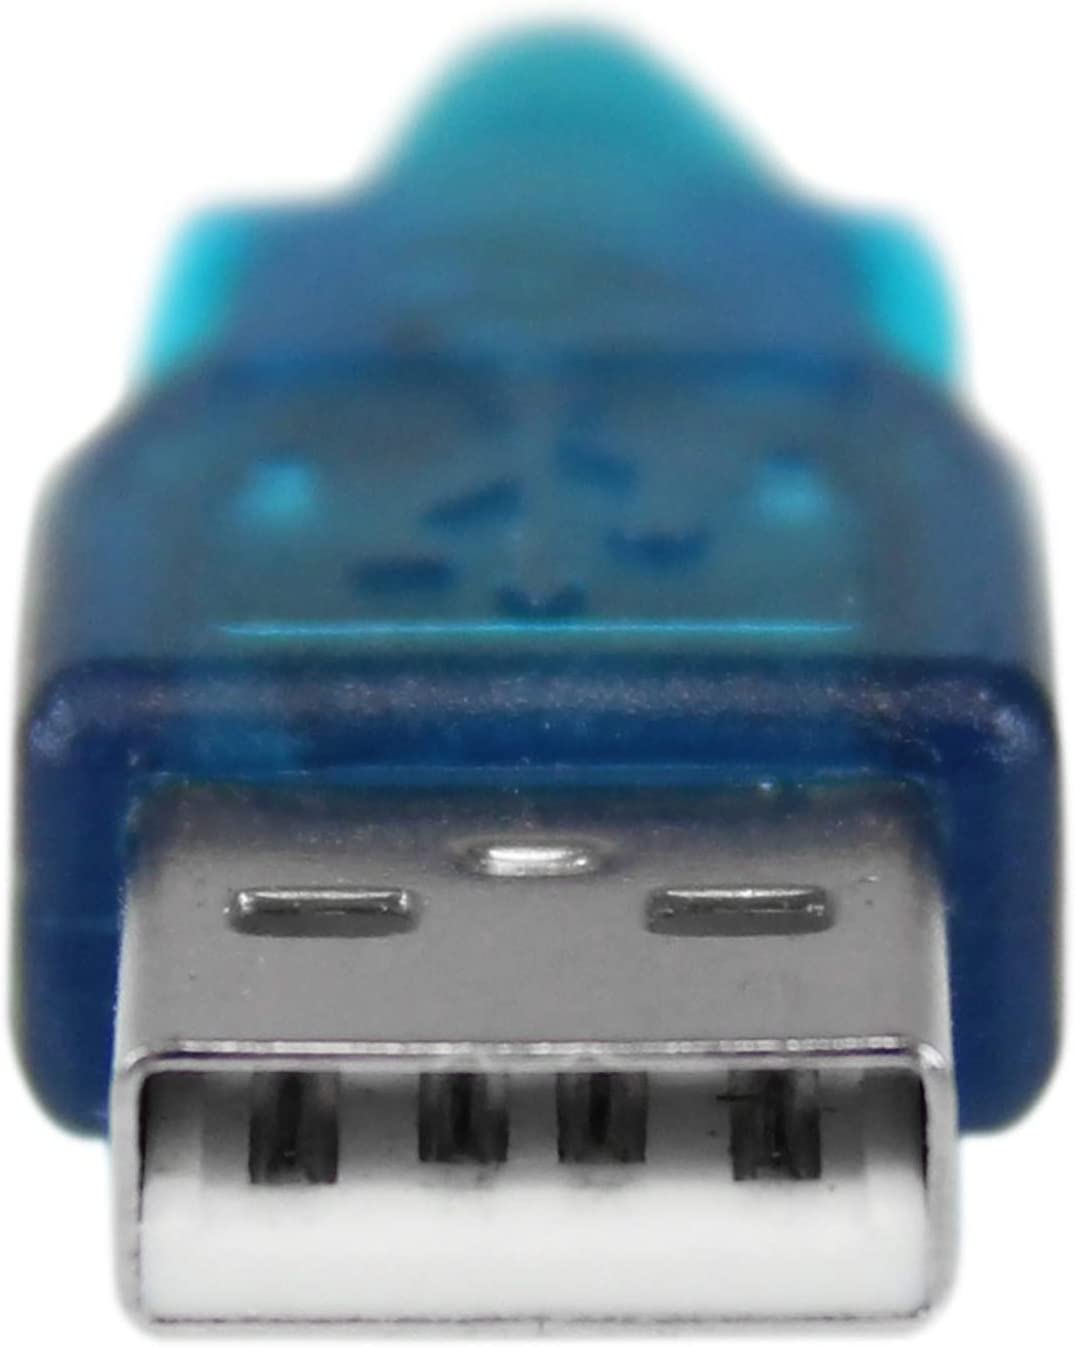 Adaptateur USB vers port Serie RS-232 mle/mle, informatique ile de la runion 974